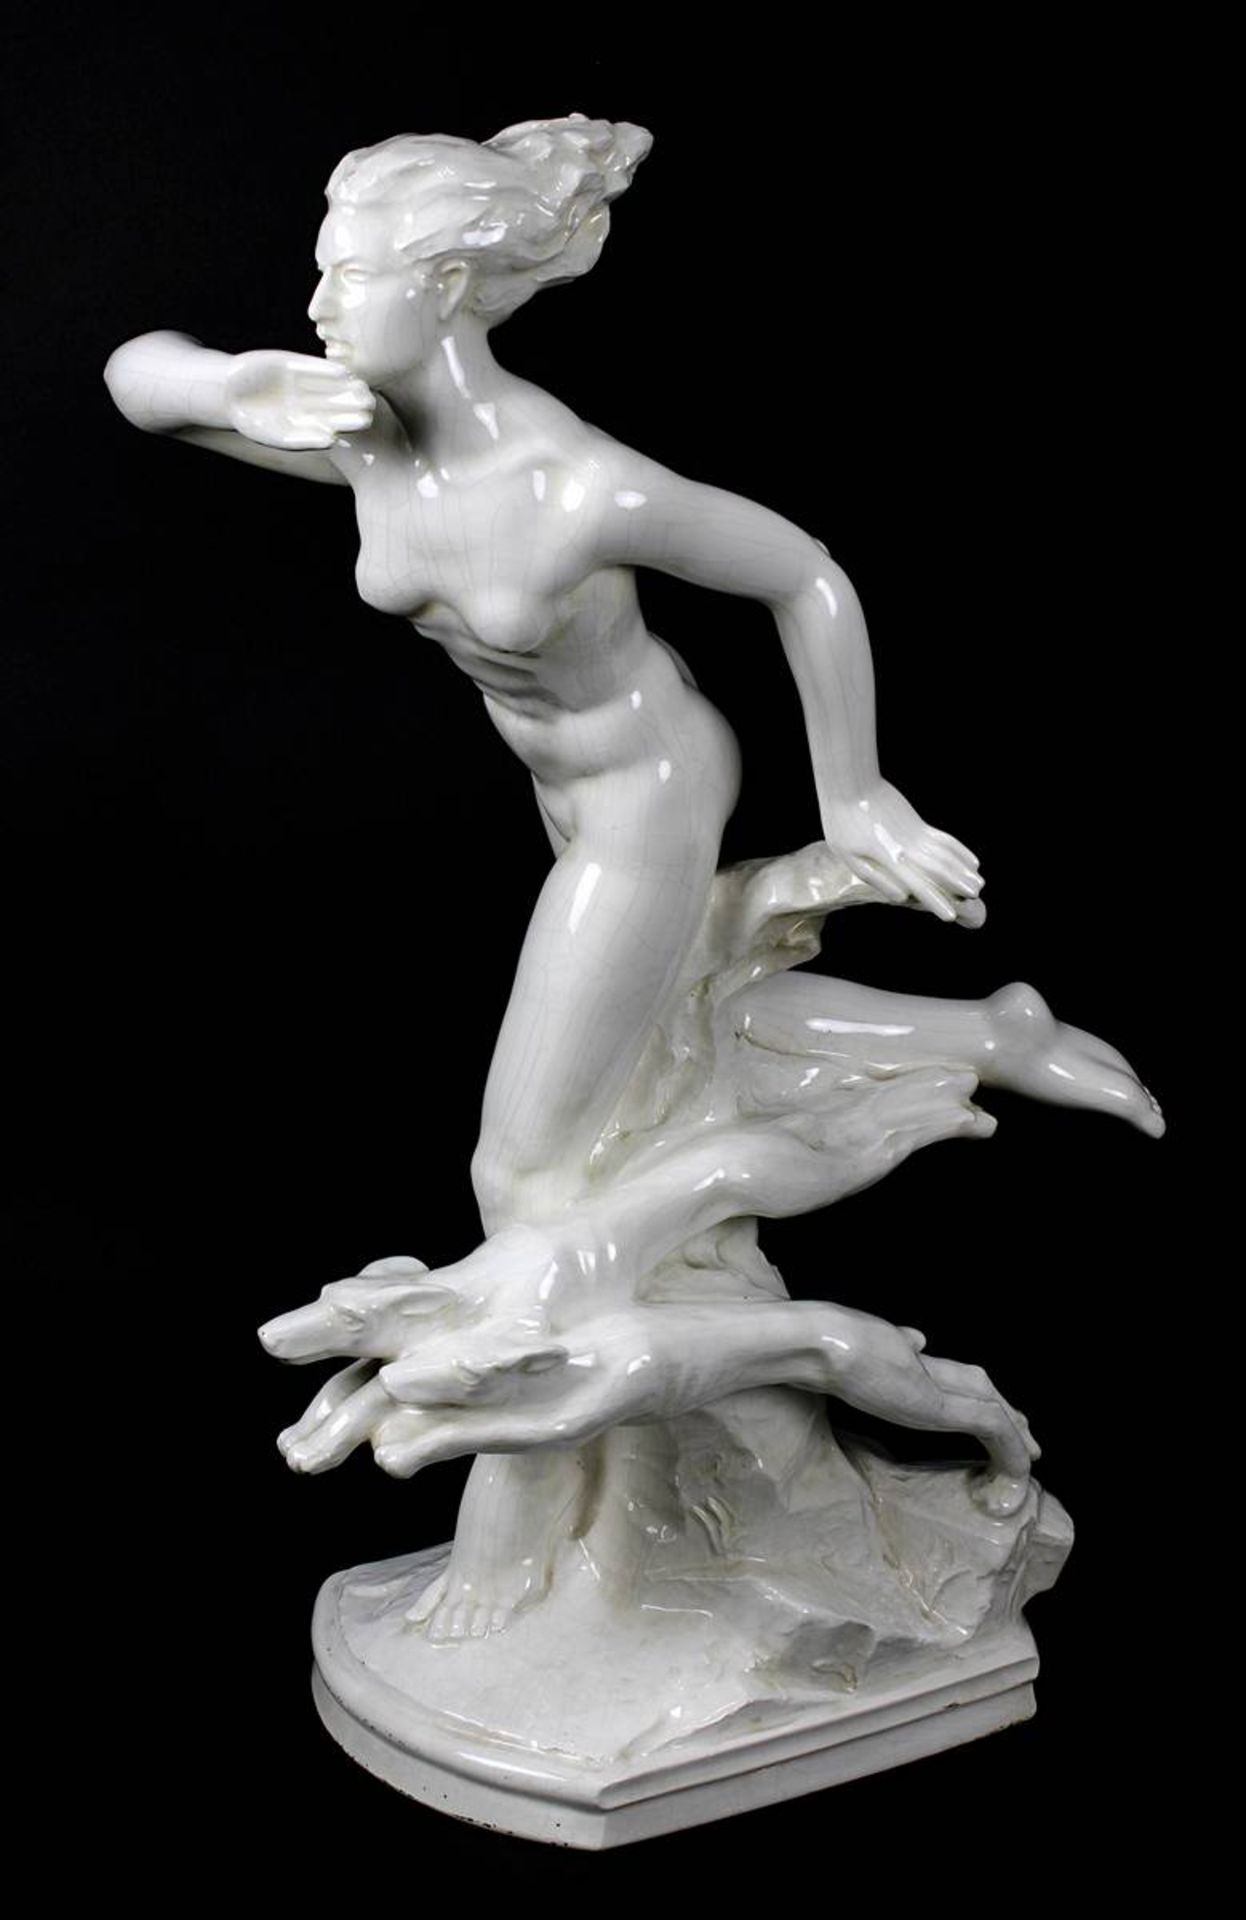 Lichtág, Jan (1898 - 1985), "Diana mit zwei Hunden", Keramikfigur, Art Déco um 1925, Keramische